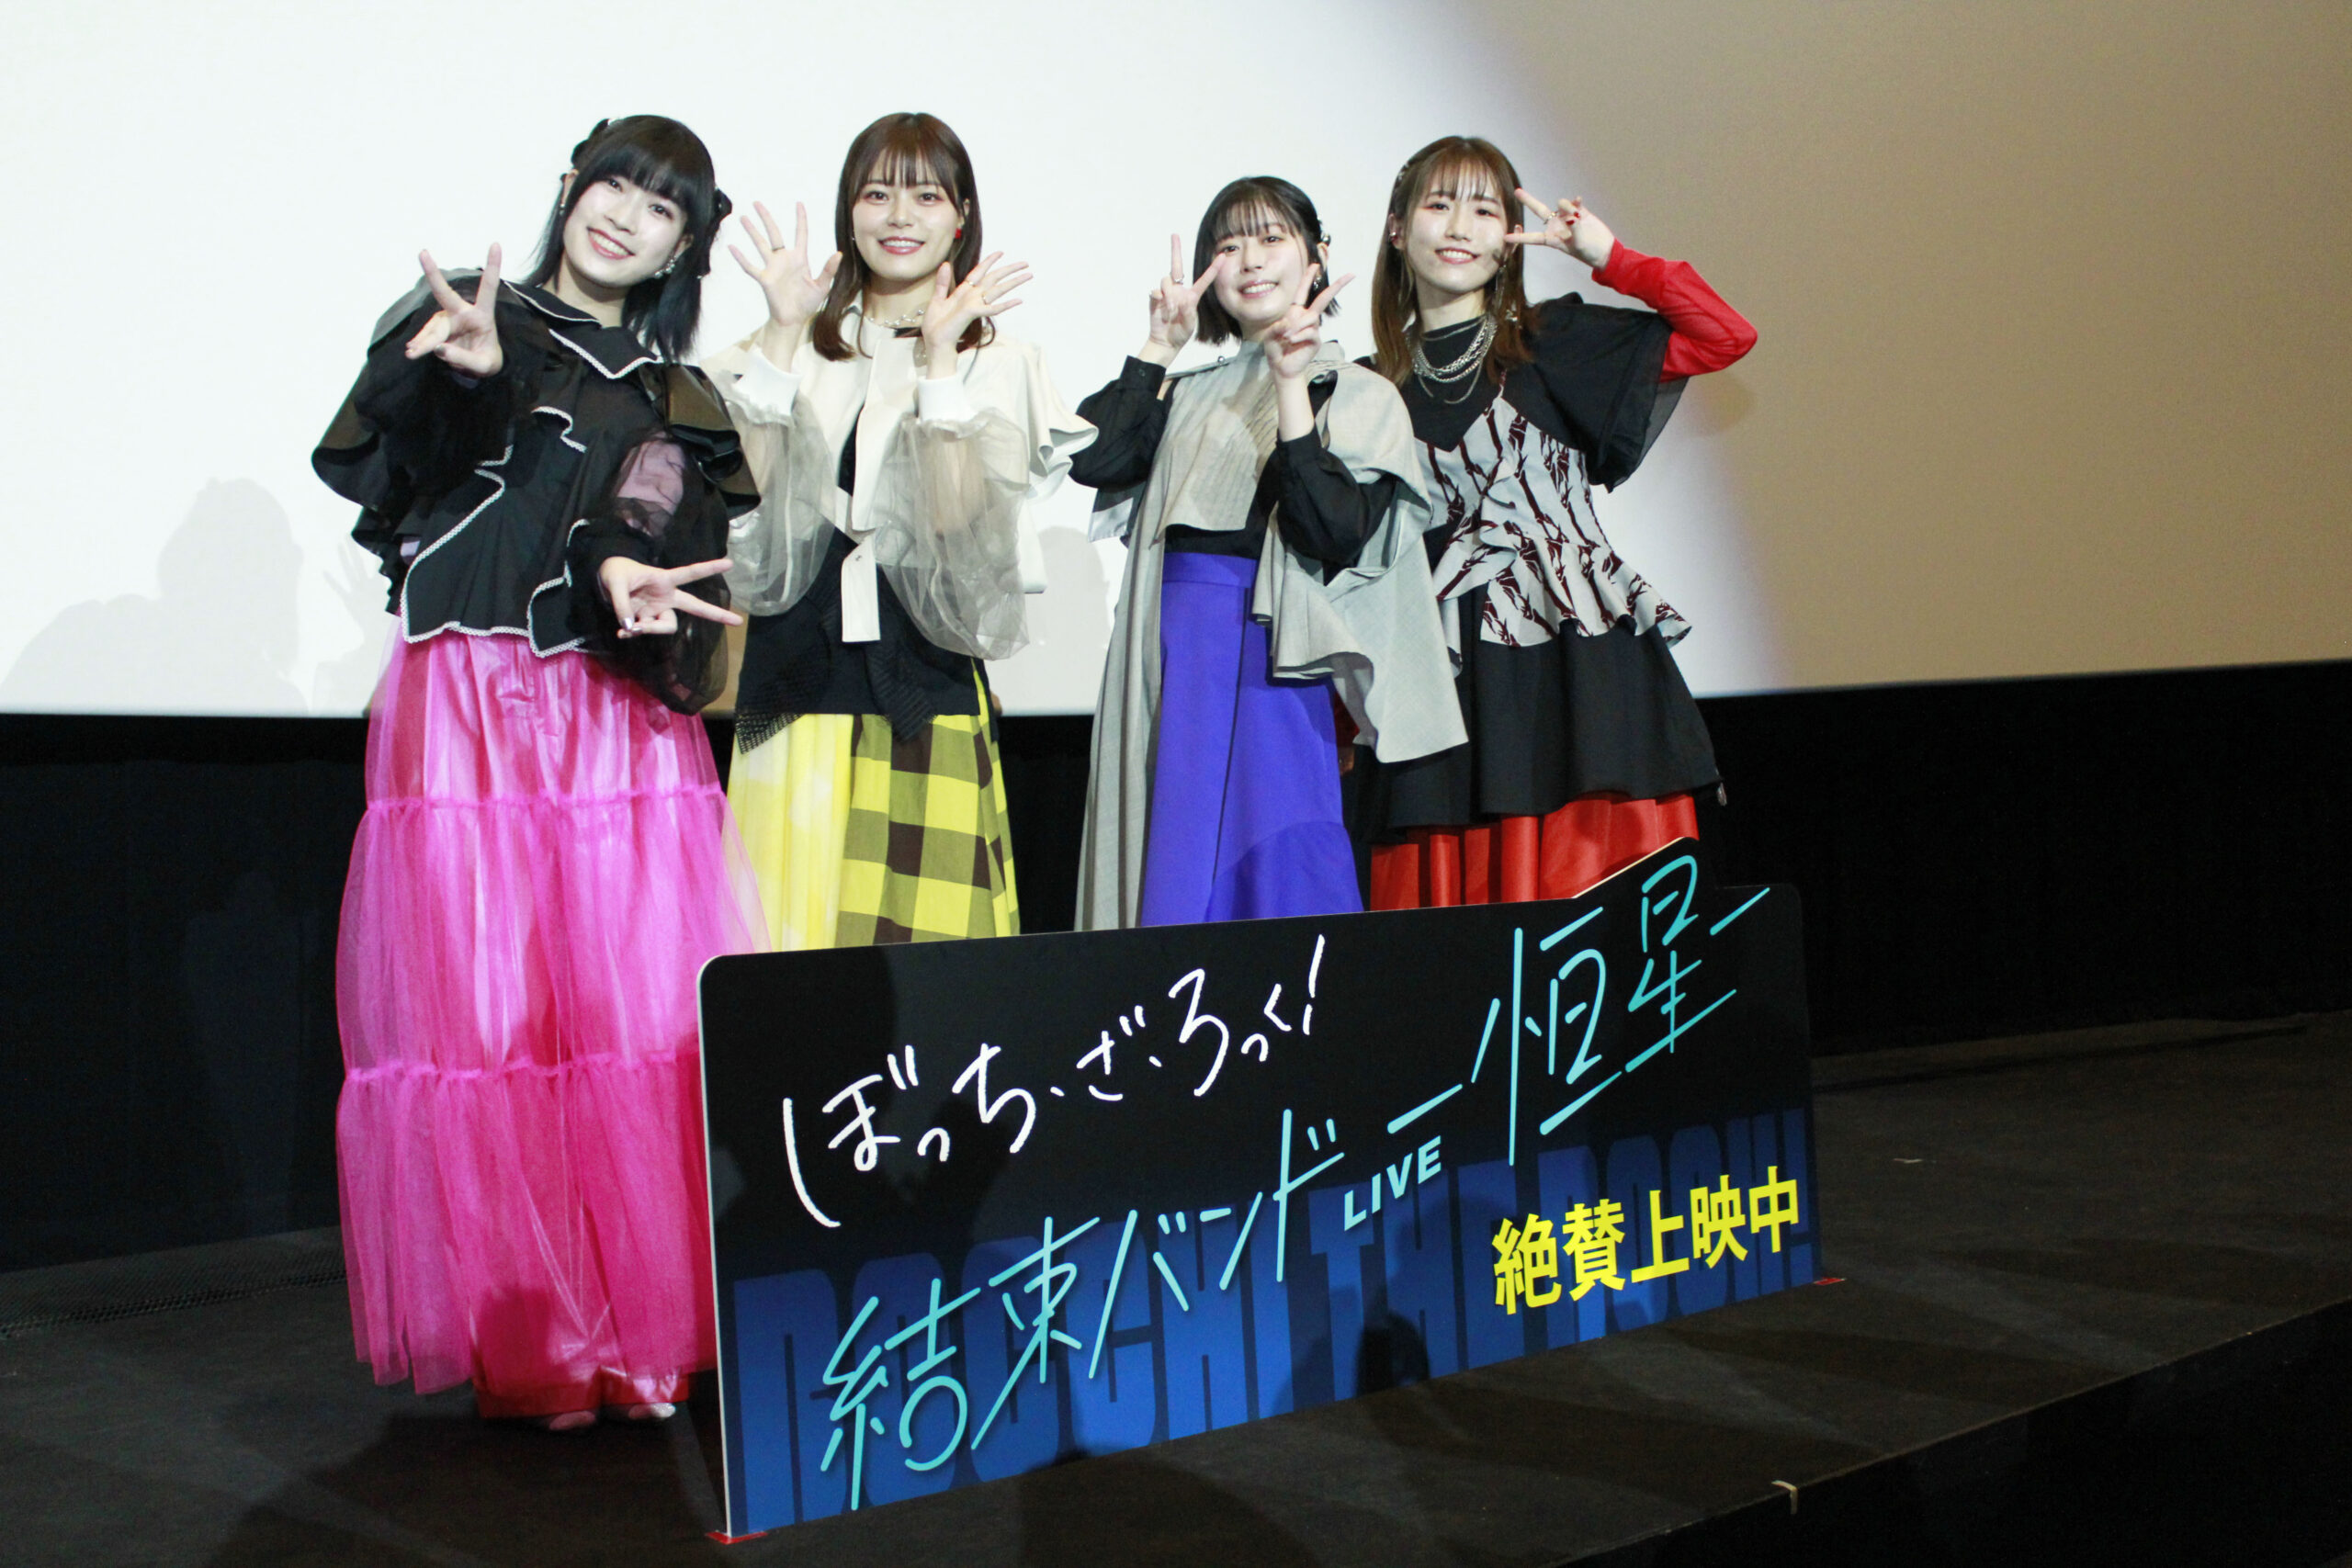 左から、青山吉能さん、鈴代紗弓さん、水野朔さん、長谷川育美さん